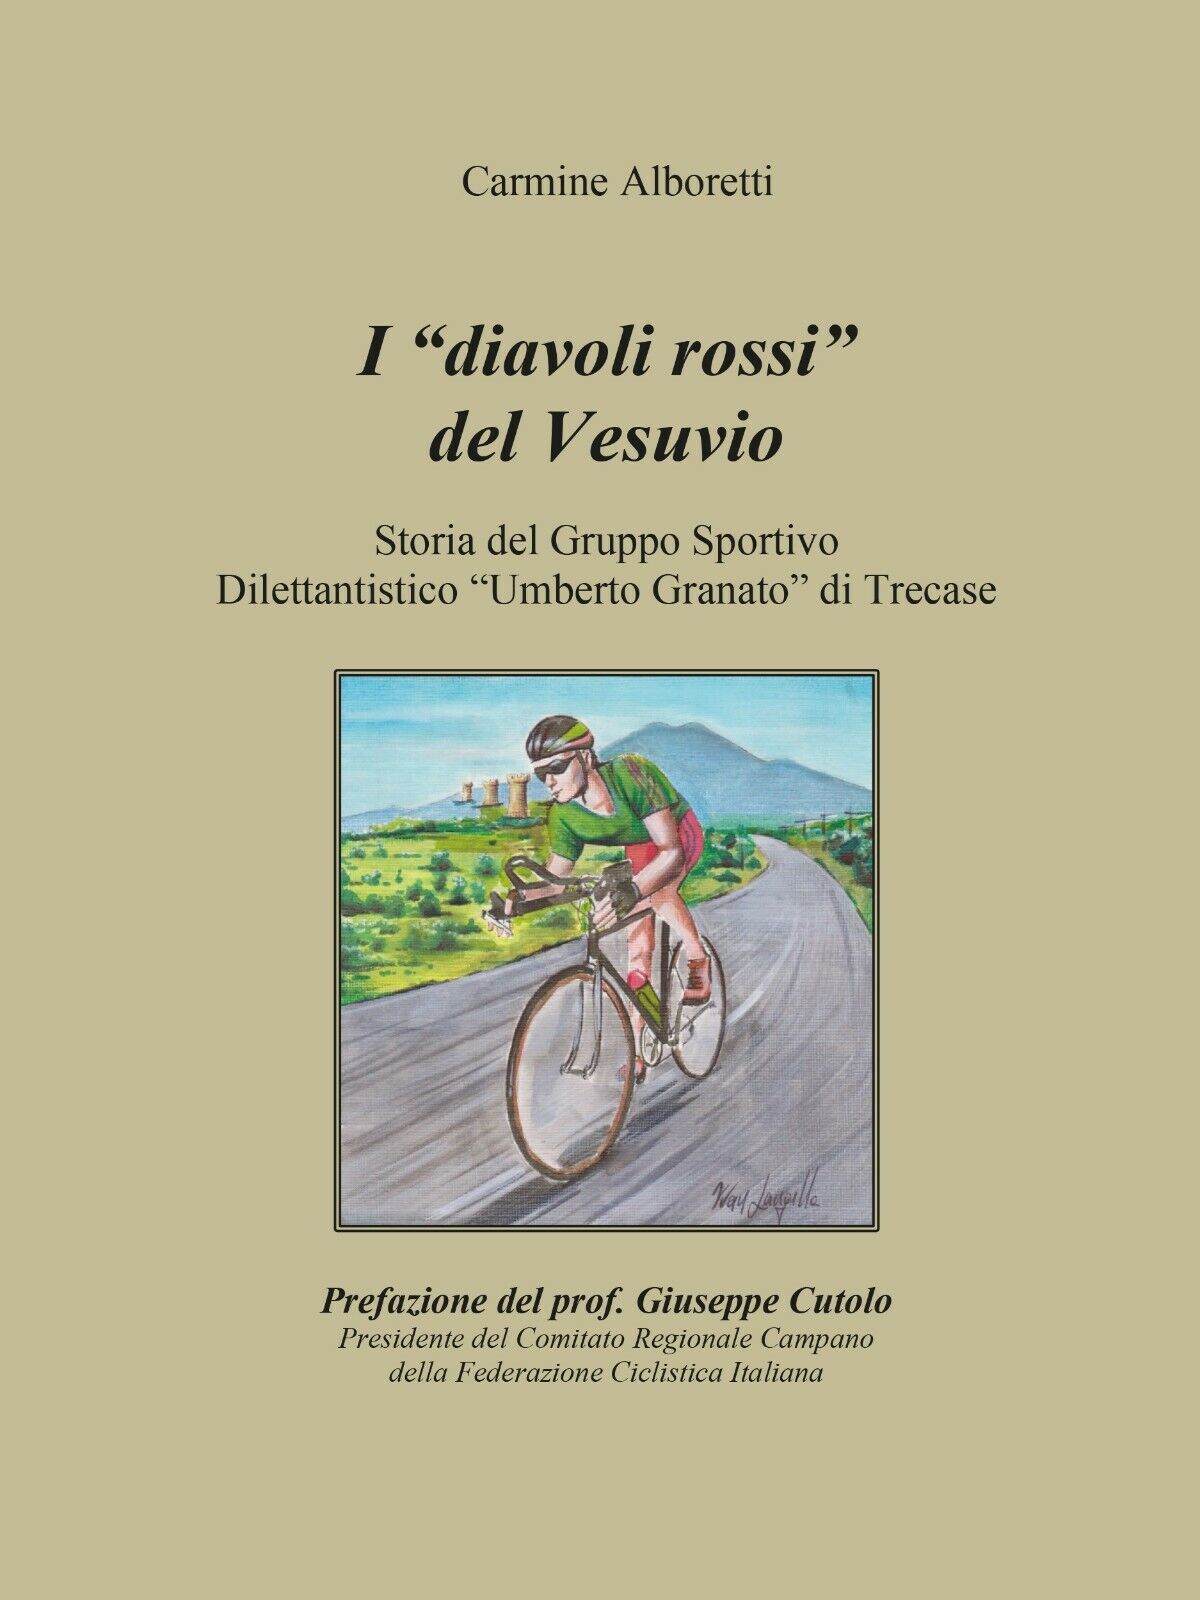 I diavoli rossi del Vesuvio - Carmine Alboretti,  2016,  Youcanprint